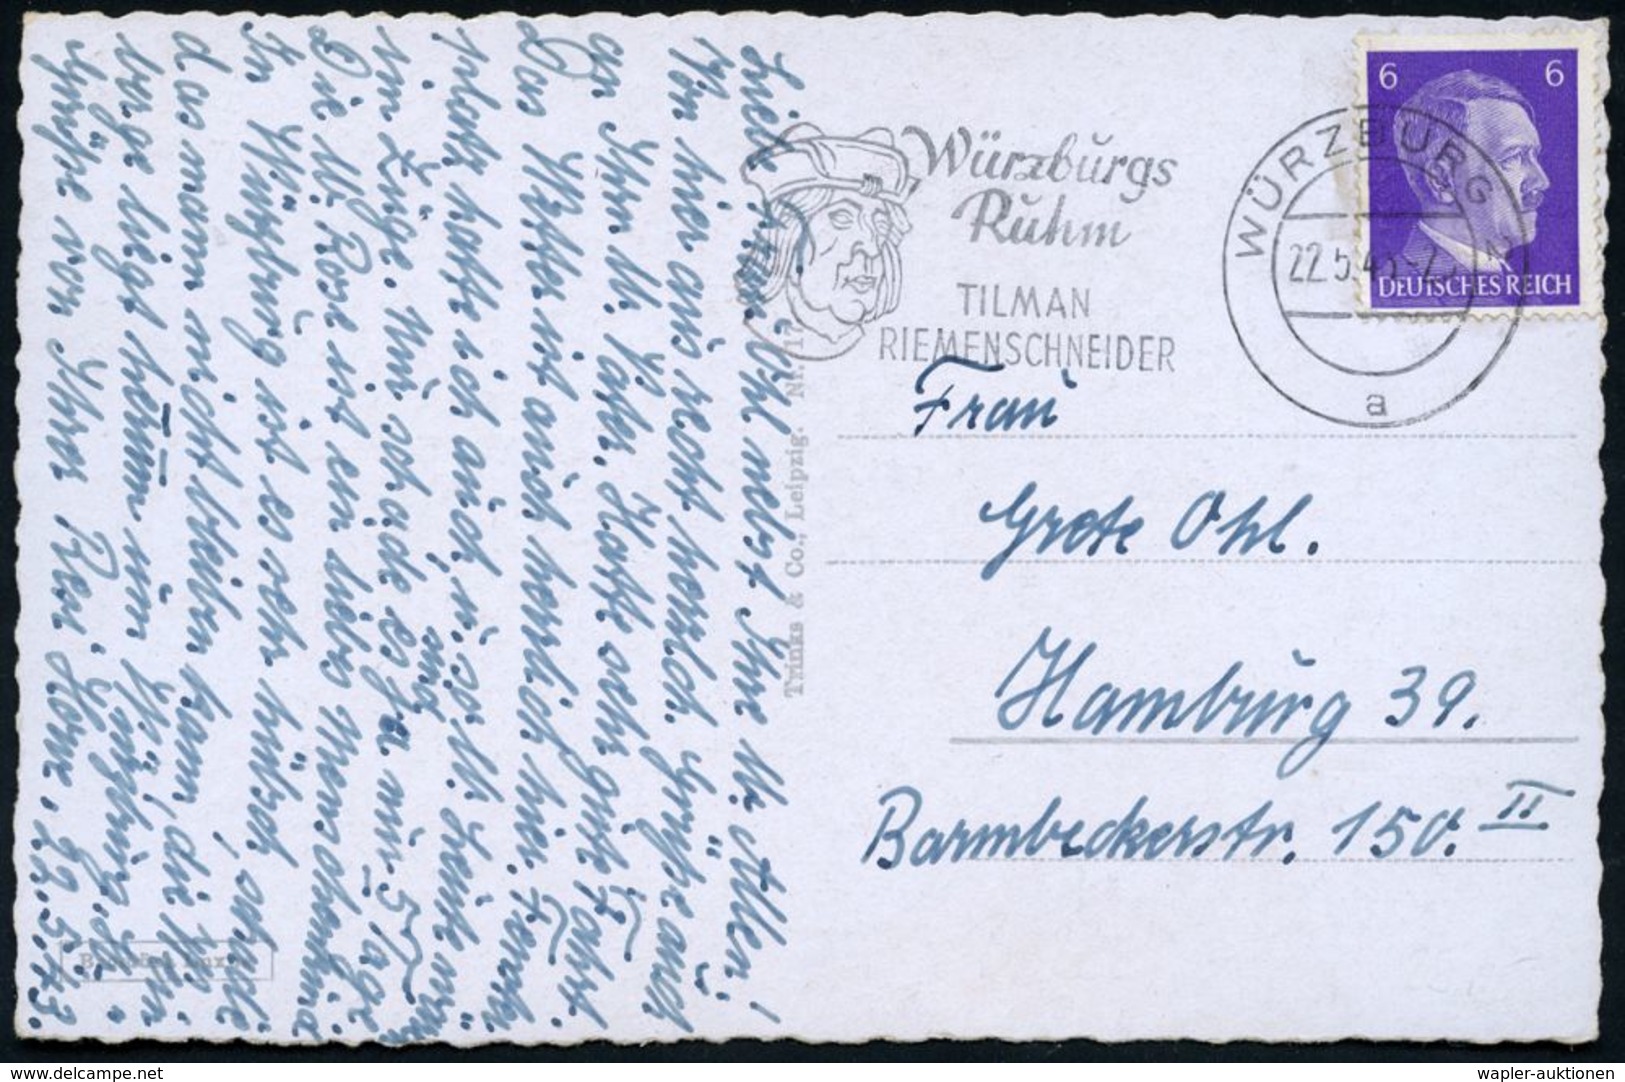 WÜRZBURG 2/ A/ Würzburgs/ Ruhm/ TILMAN/ RIEMENSCHNEIDER 1943 (22.5.) Seltener  MWSt = Kopfbild Riemenschneider (mit Mütz - Scultura